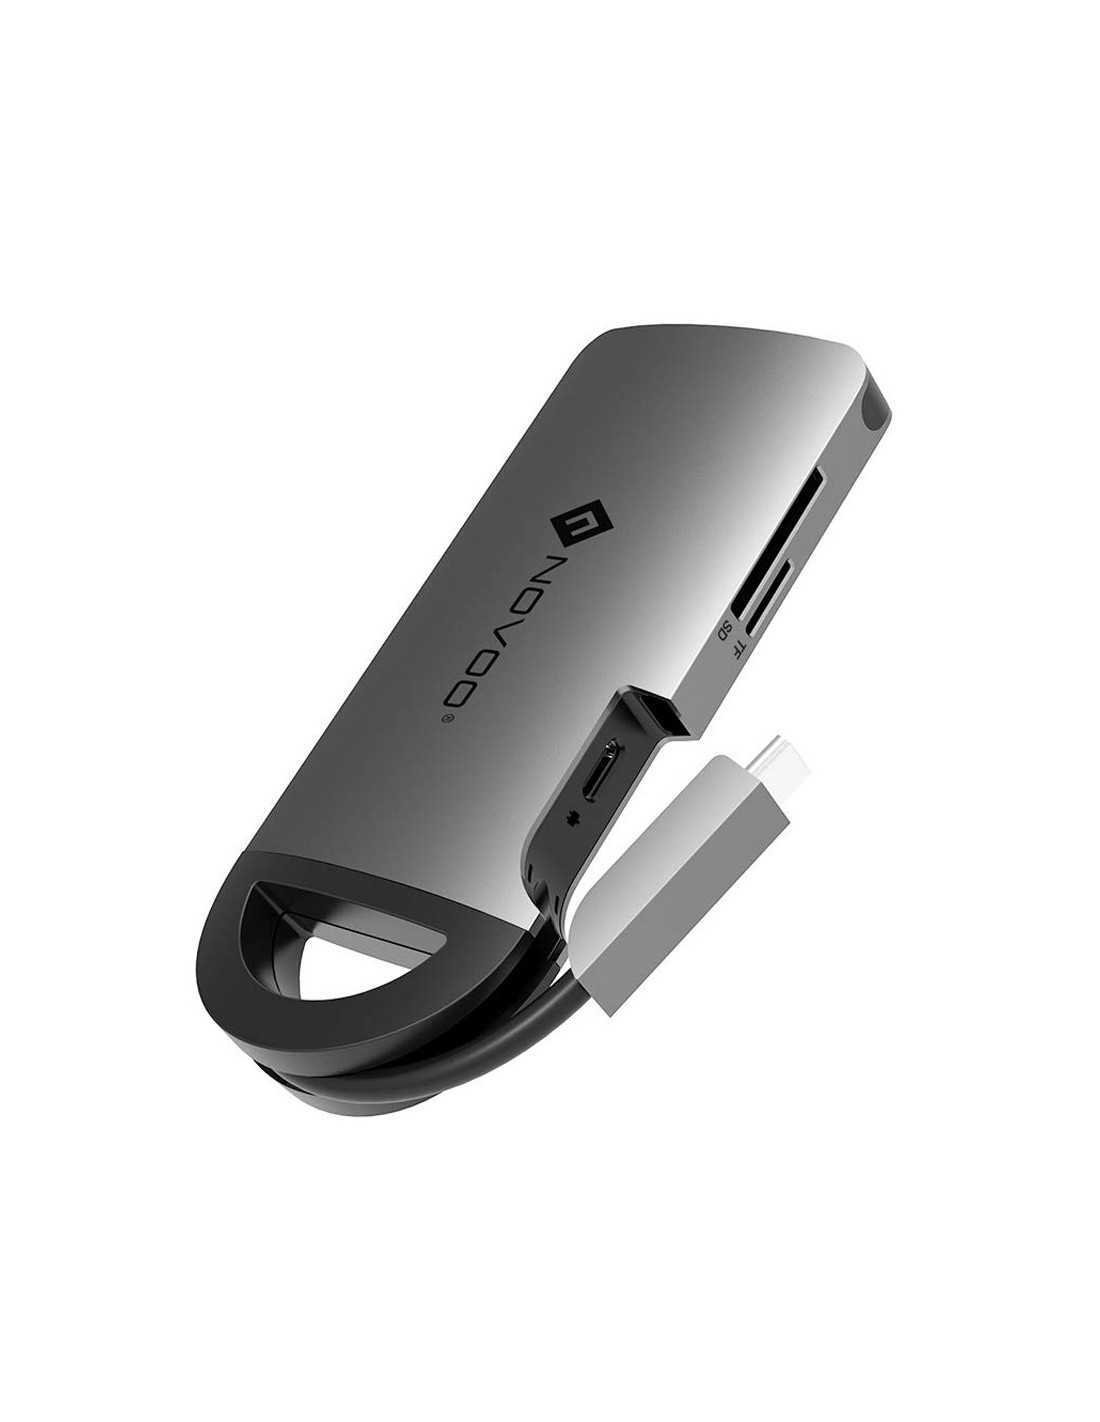 PowerUp : le bloc de recharge USB-C qui fait aussi hub USB-A